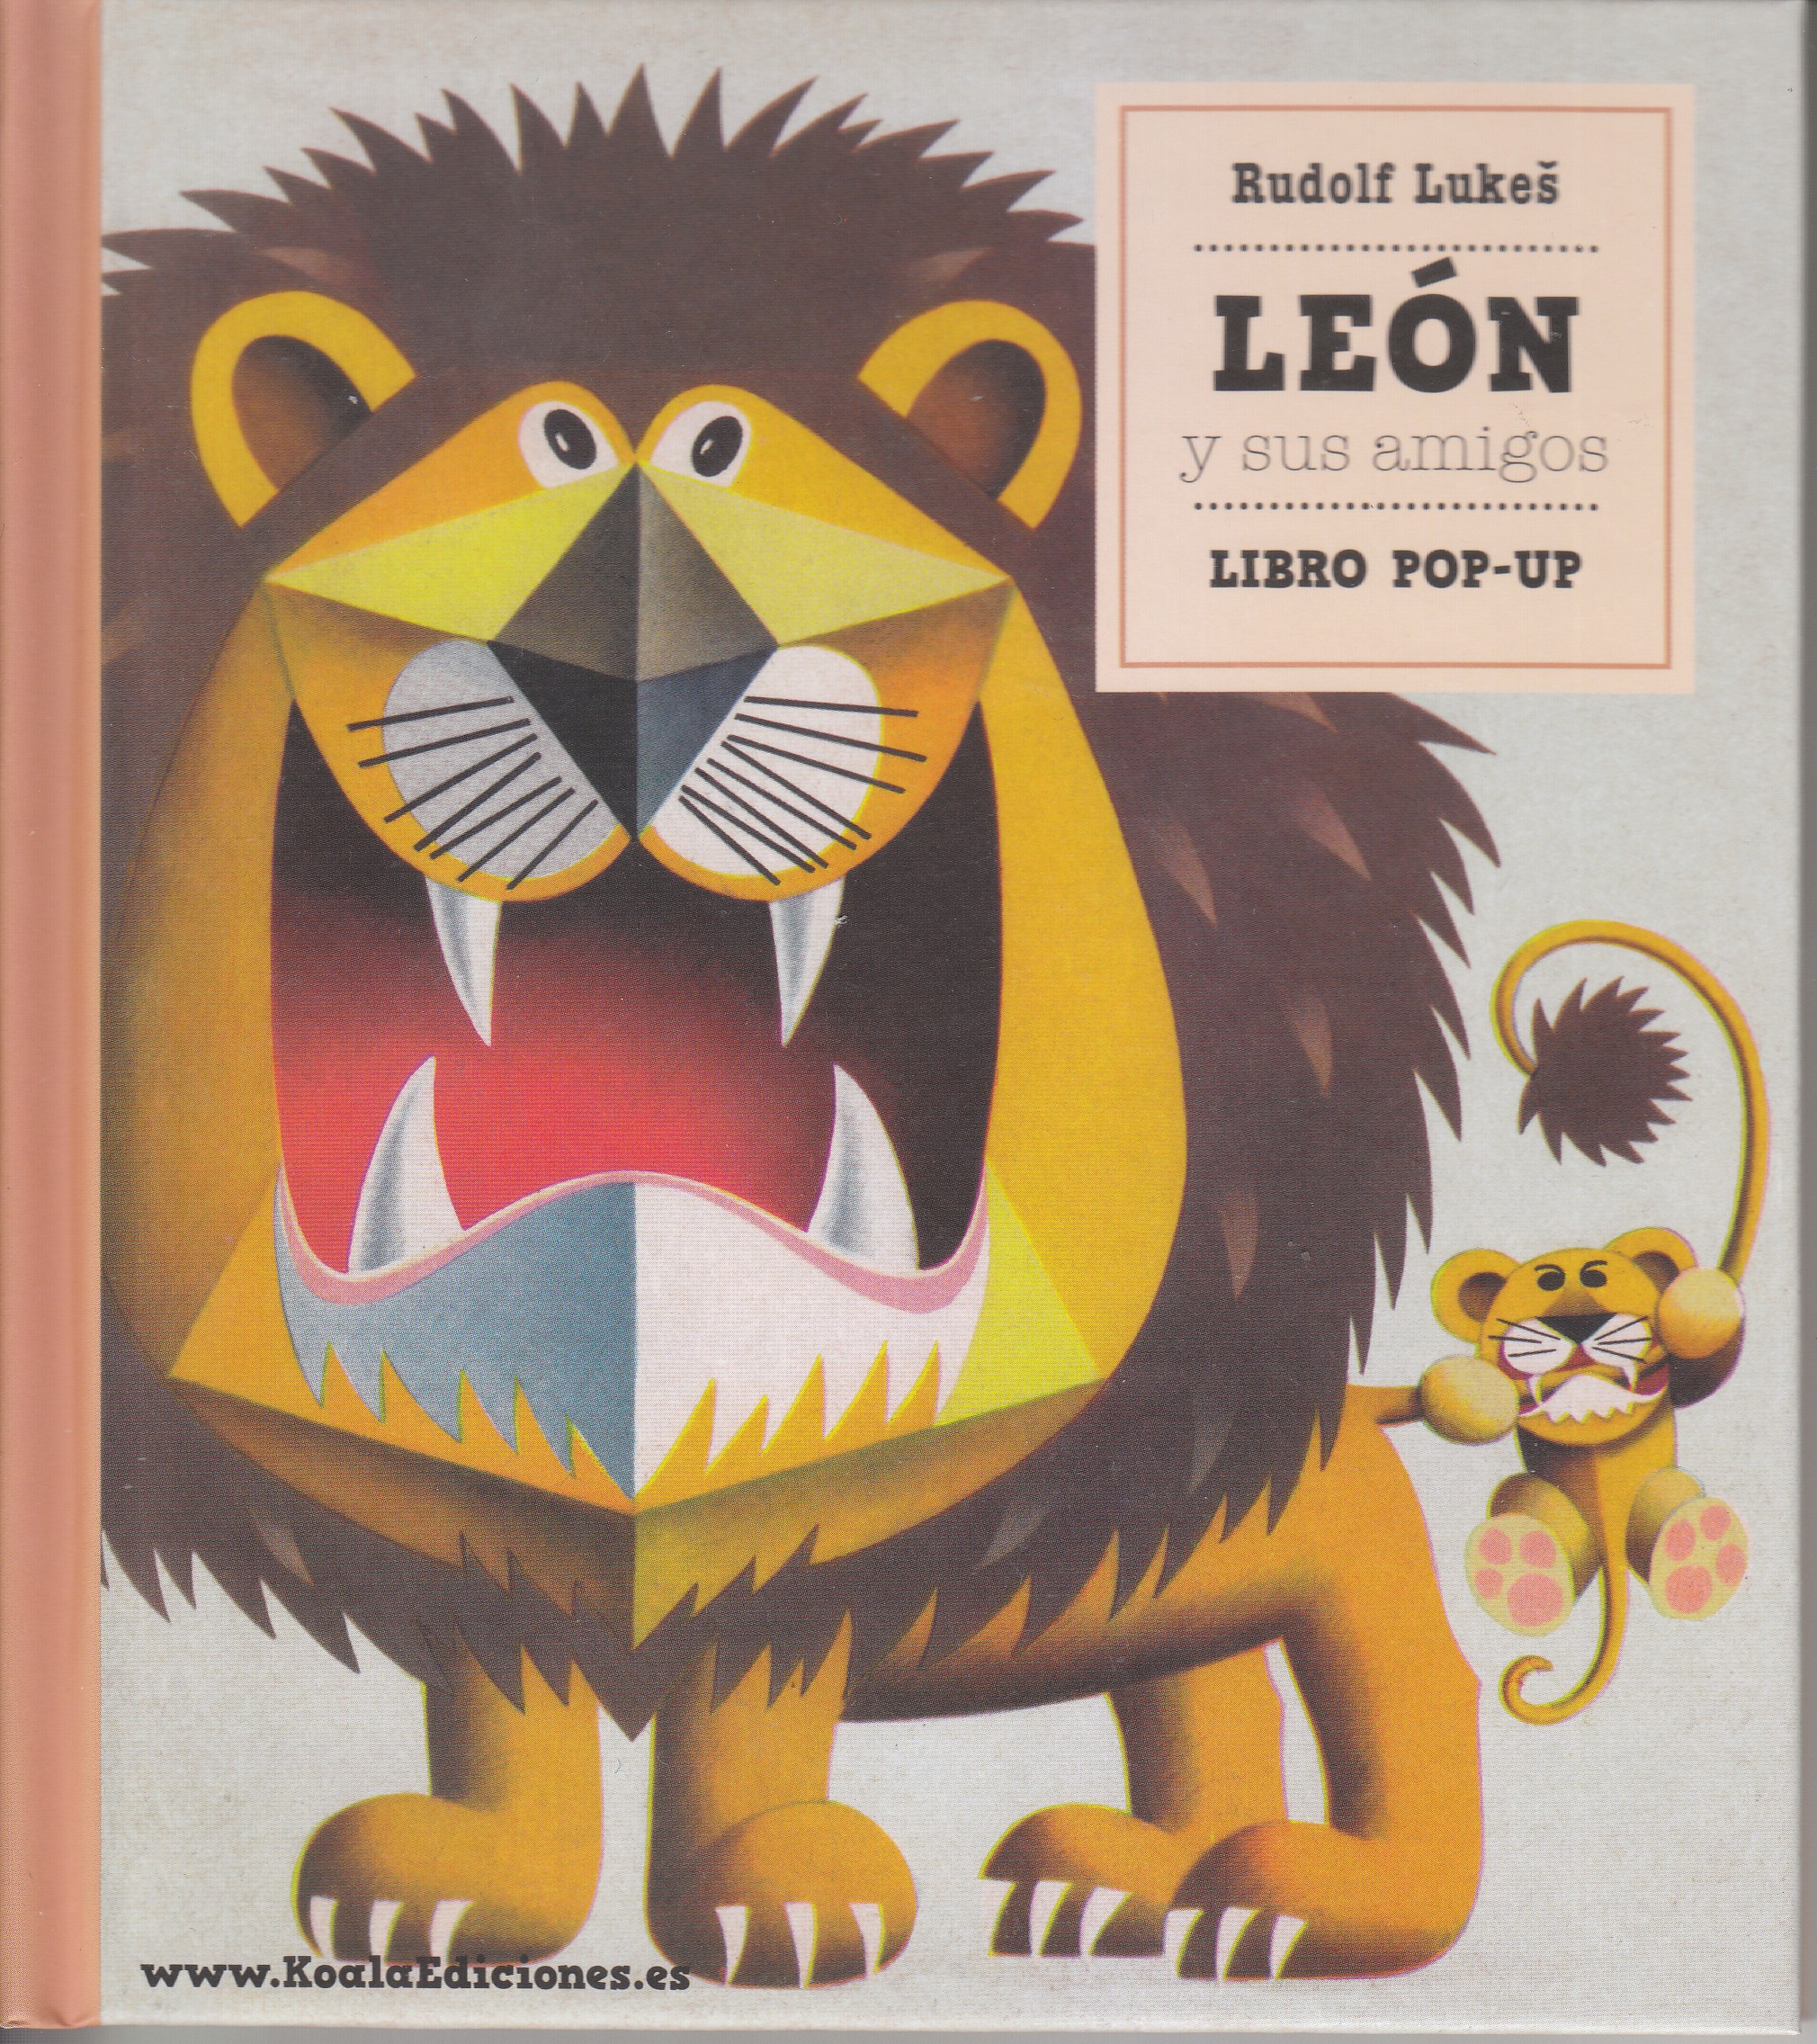 León y sus amigos 